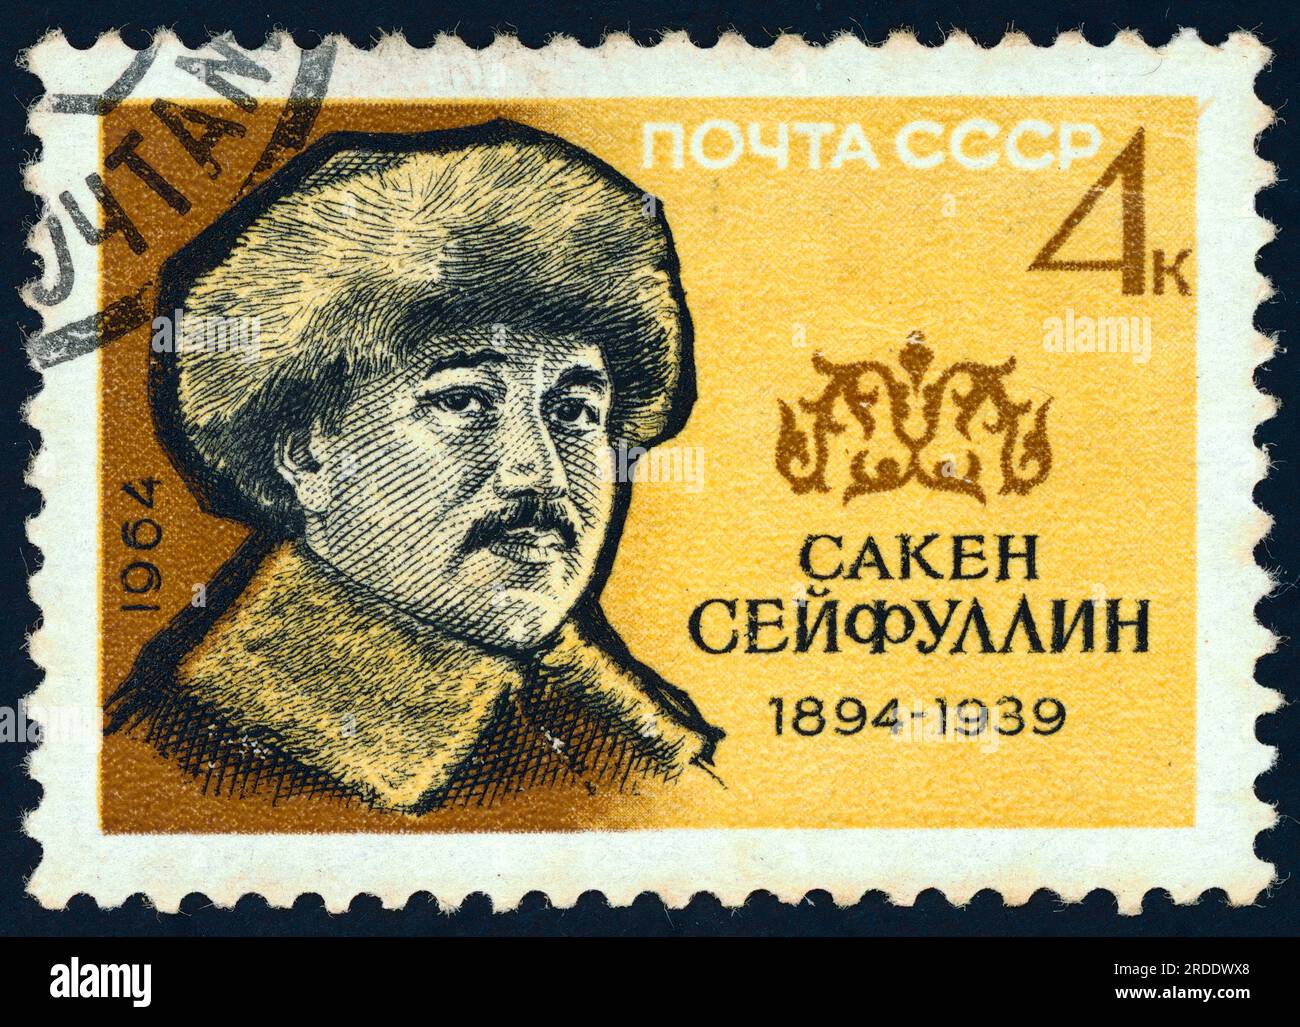 Saken Seifullin (1894 – 1938). Timbre-poste émis en URSS en 1964. Seifullin est un pionnier de la littérature kazakhe moderne, poète et écrivain, et activiste national. Il a été le fondateur et le premier chef de l'Union des écrivains du Kazakhstan, il a été l'auteur d'une littérature controversée appelant à une plus grande indépendance des Kazakhs du pouvoir soviétique et russe. Il a rencontré la répression et a été exécuté en 1938. Le gouvernement soviétique l'a réhabilité à titre posthume pendant la déstalinisation. Banque D'Images